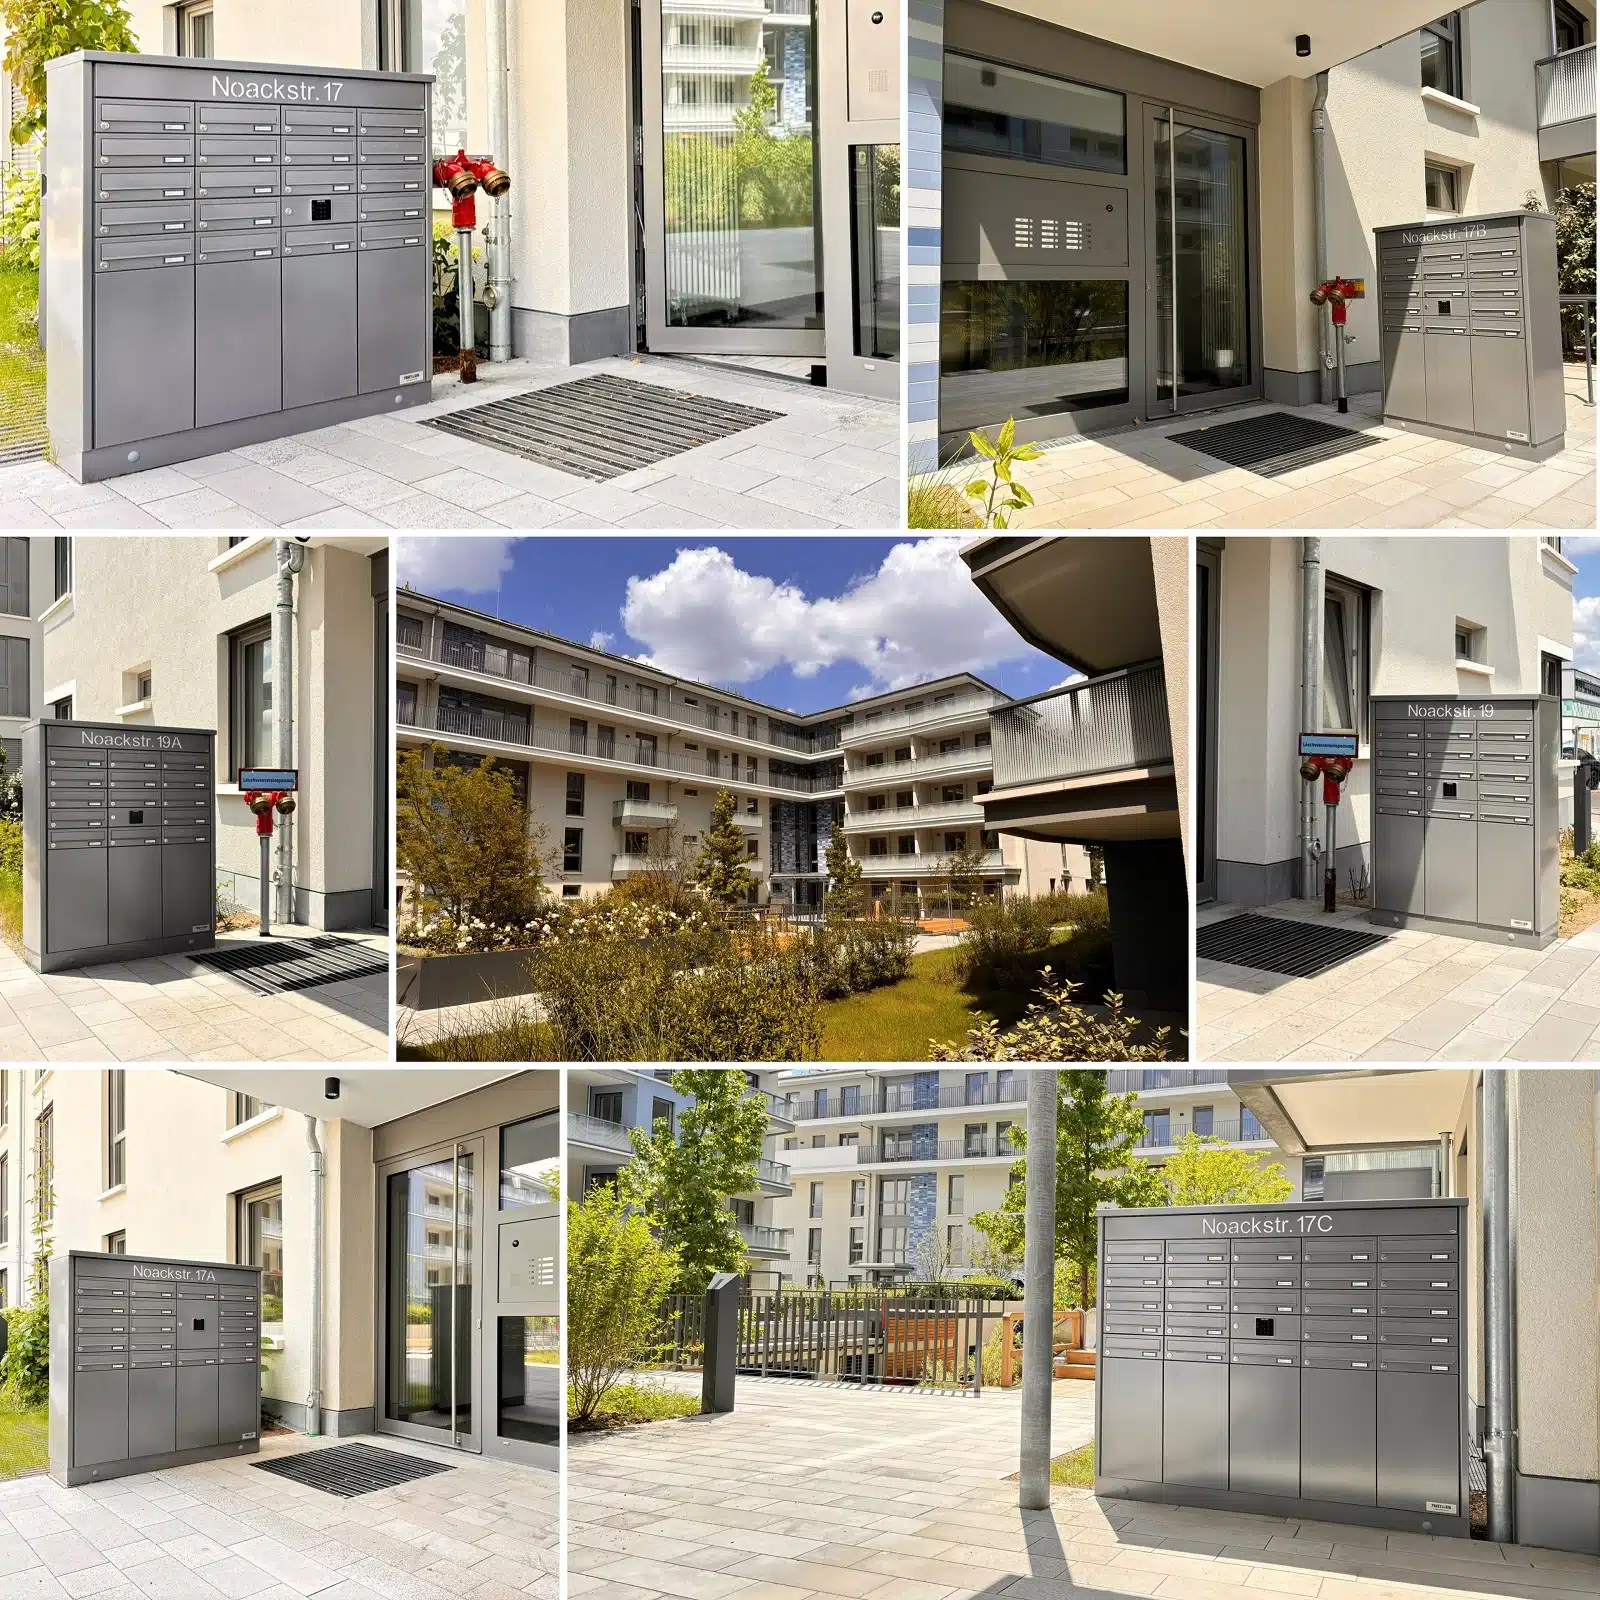 Diese Collage zeigt sechs mittelgraue, kombinierte Brief- und Paketkastenanlagen an Hauseingängen eines neugebauten Quartiers.